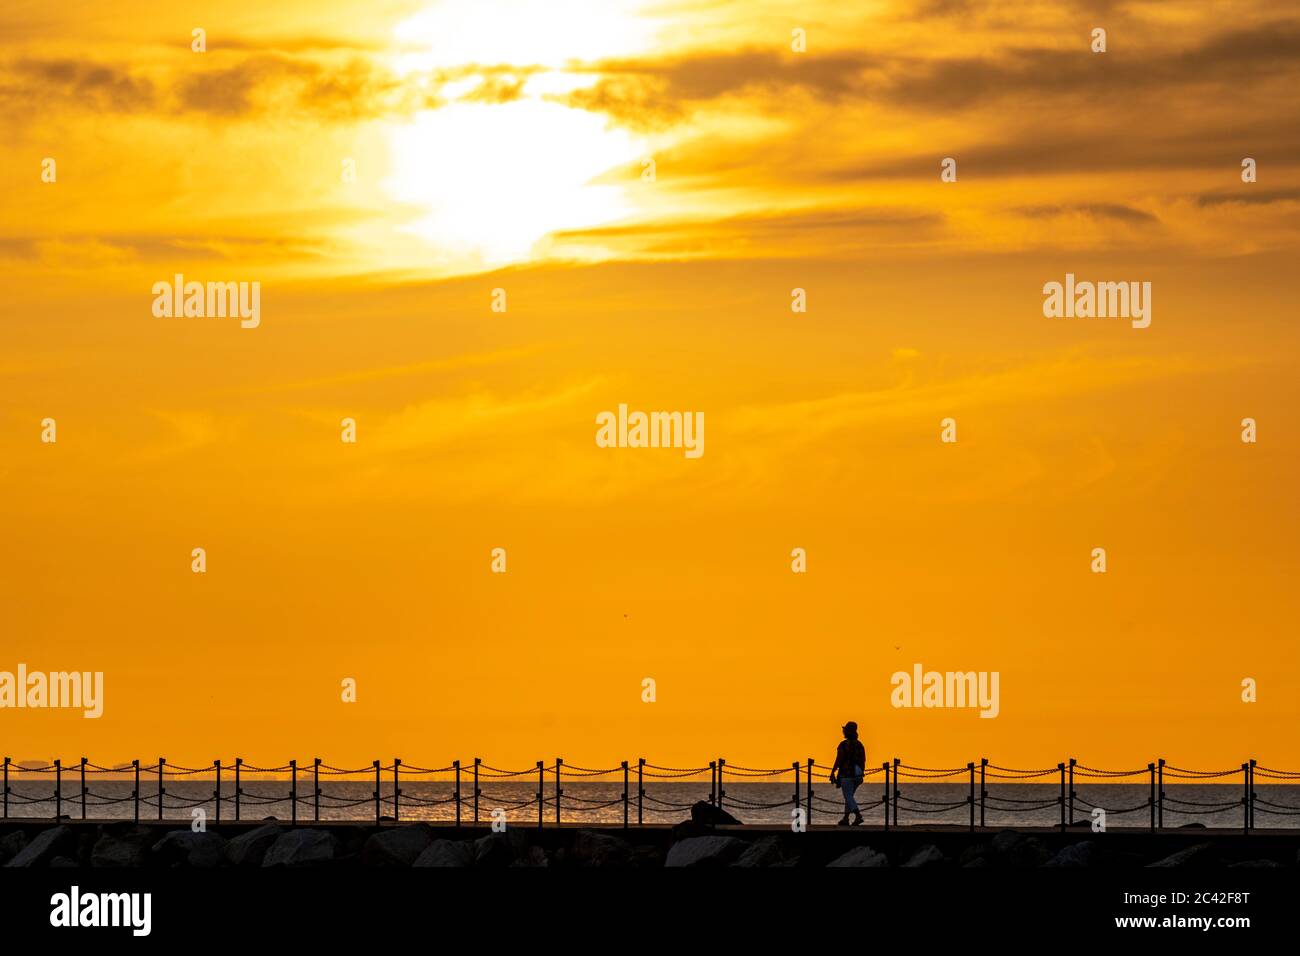 Frau mittleren Alters hat sich gegen den Sonnenuntergang orange Himmel zu Fuß allein entlang Hafenmauer mit Kettengeländer in Herne Bay in Kent. Sonne am Seil des Rahmens, Frau und Geländer unten. Wolkiger Sonnenuntergang oranger Himmel. Stockfoto